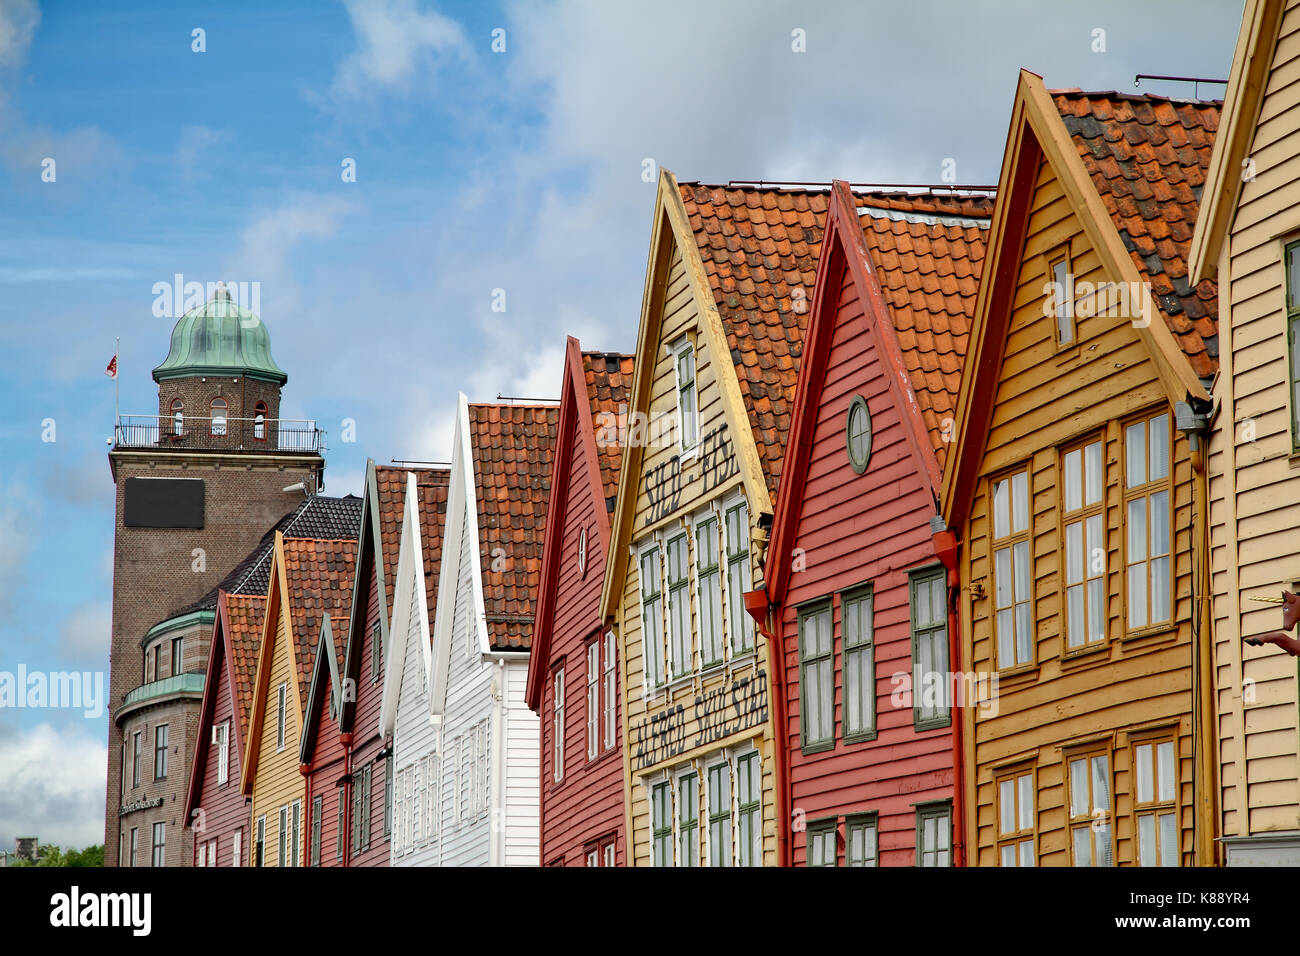 Bryggen facades, Bergen. Norway. Stock Photo